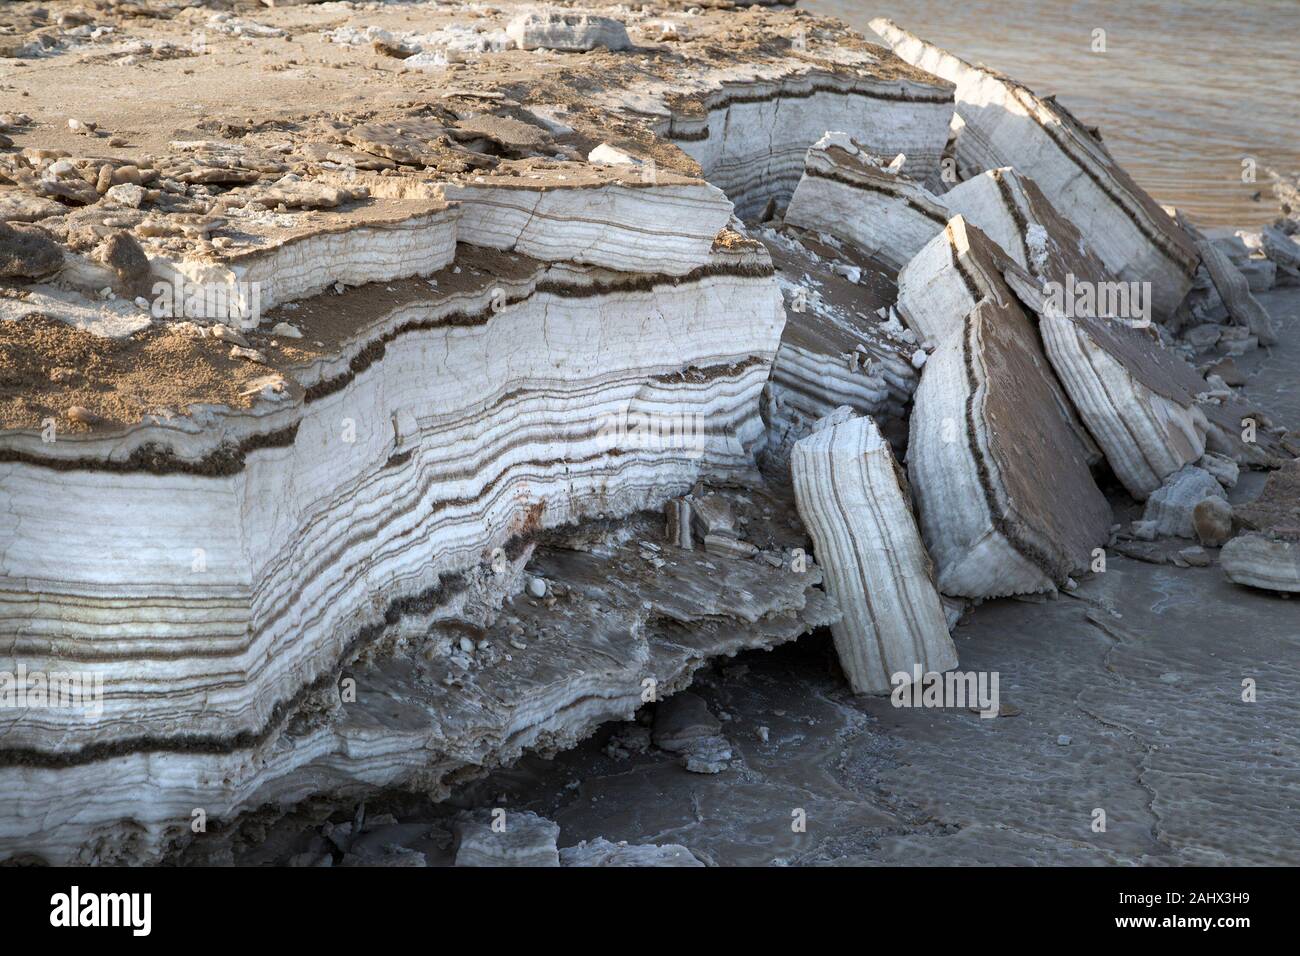 Capas anuales de sal y minerales depositados en la orilla del Mar Muerto, expuestos por la caída de los niveles de agua. Foto de stock